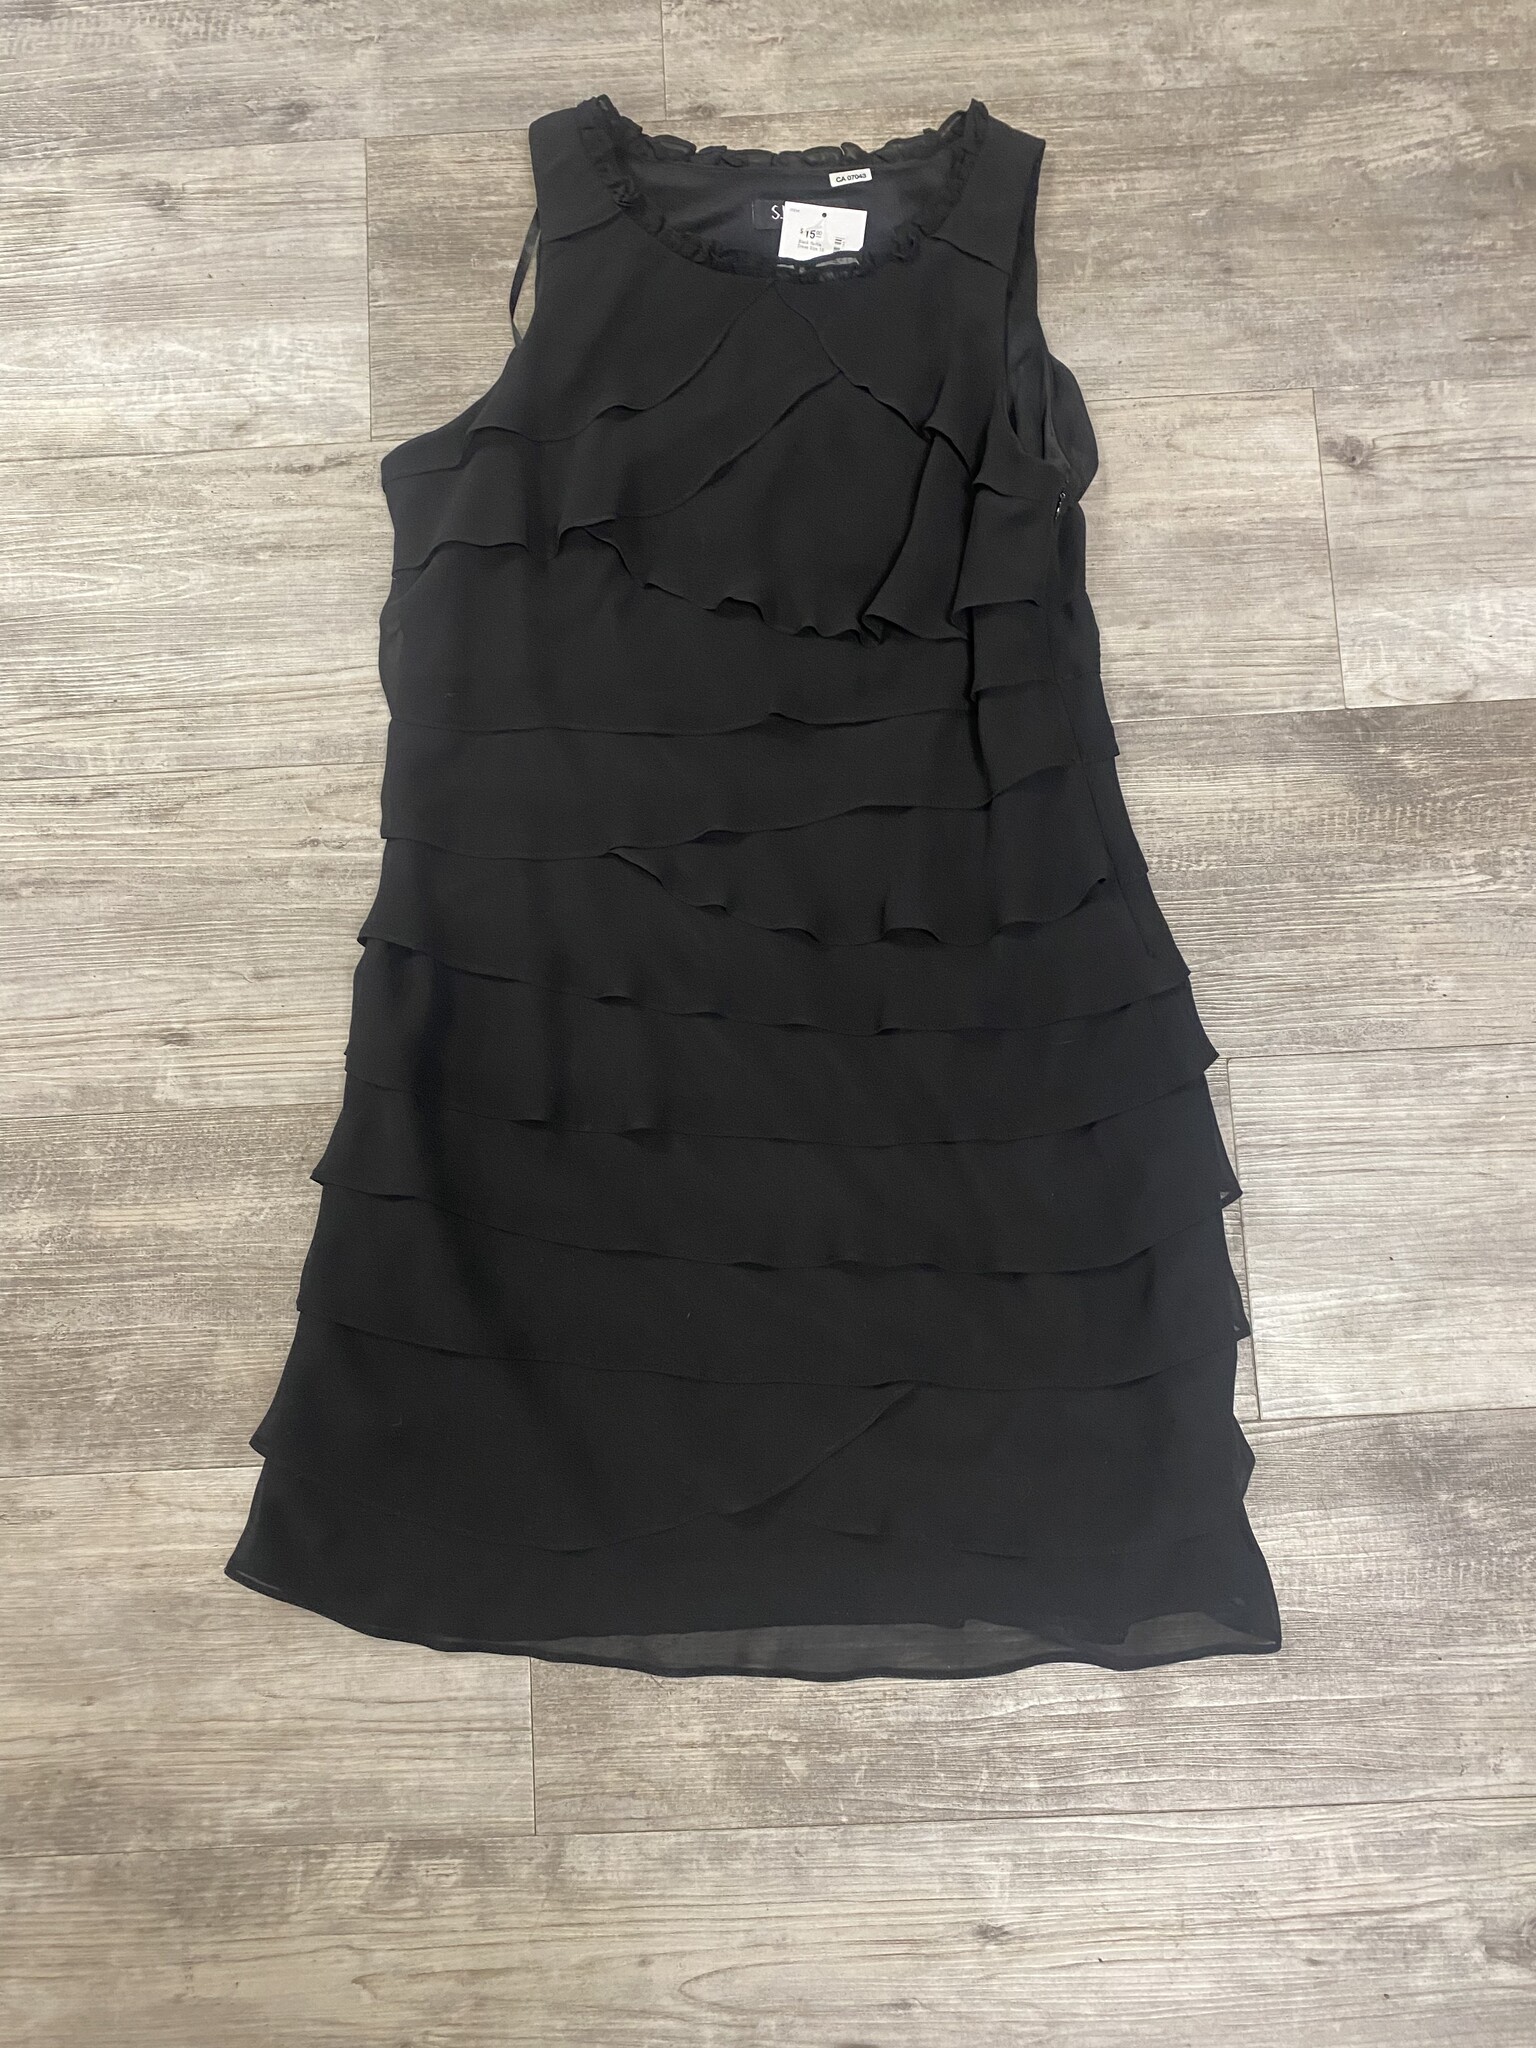 Black Ruffle Dress Size 16